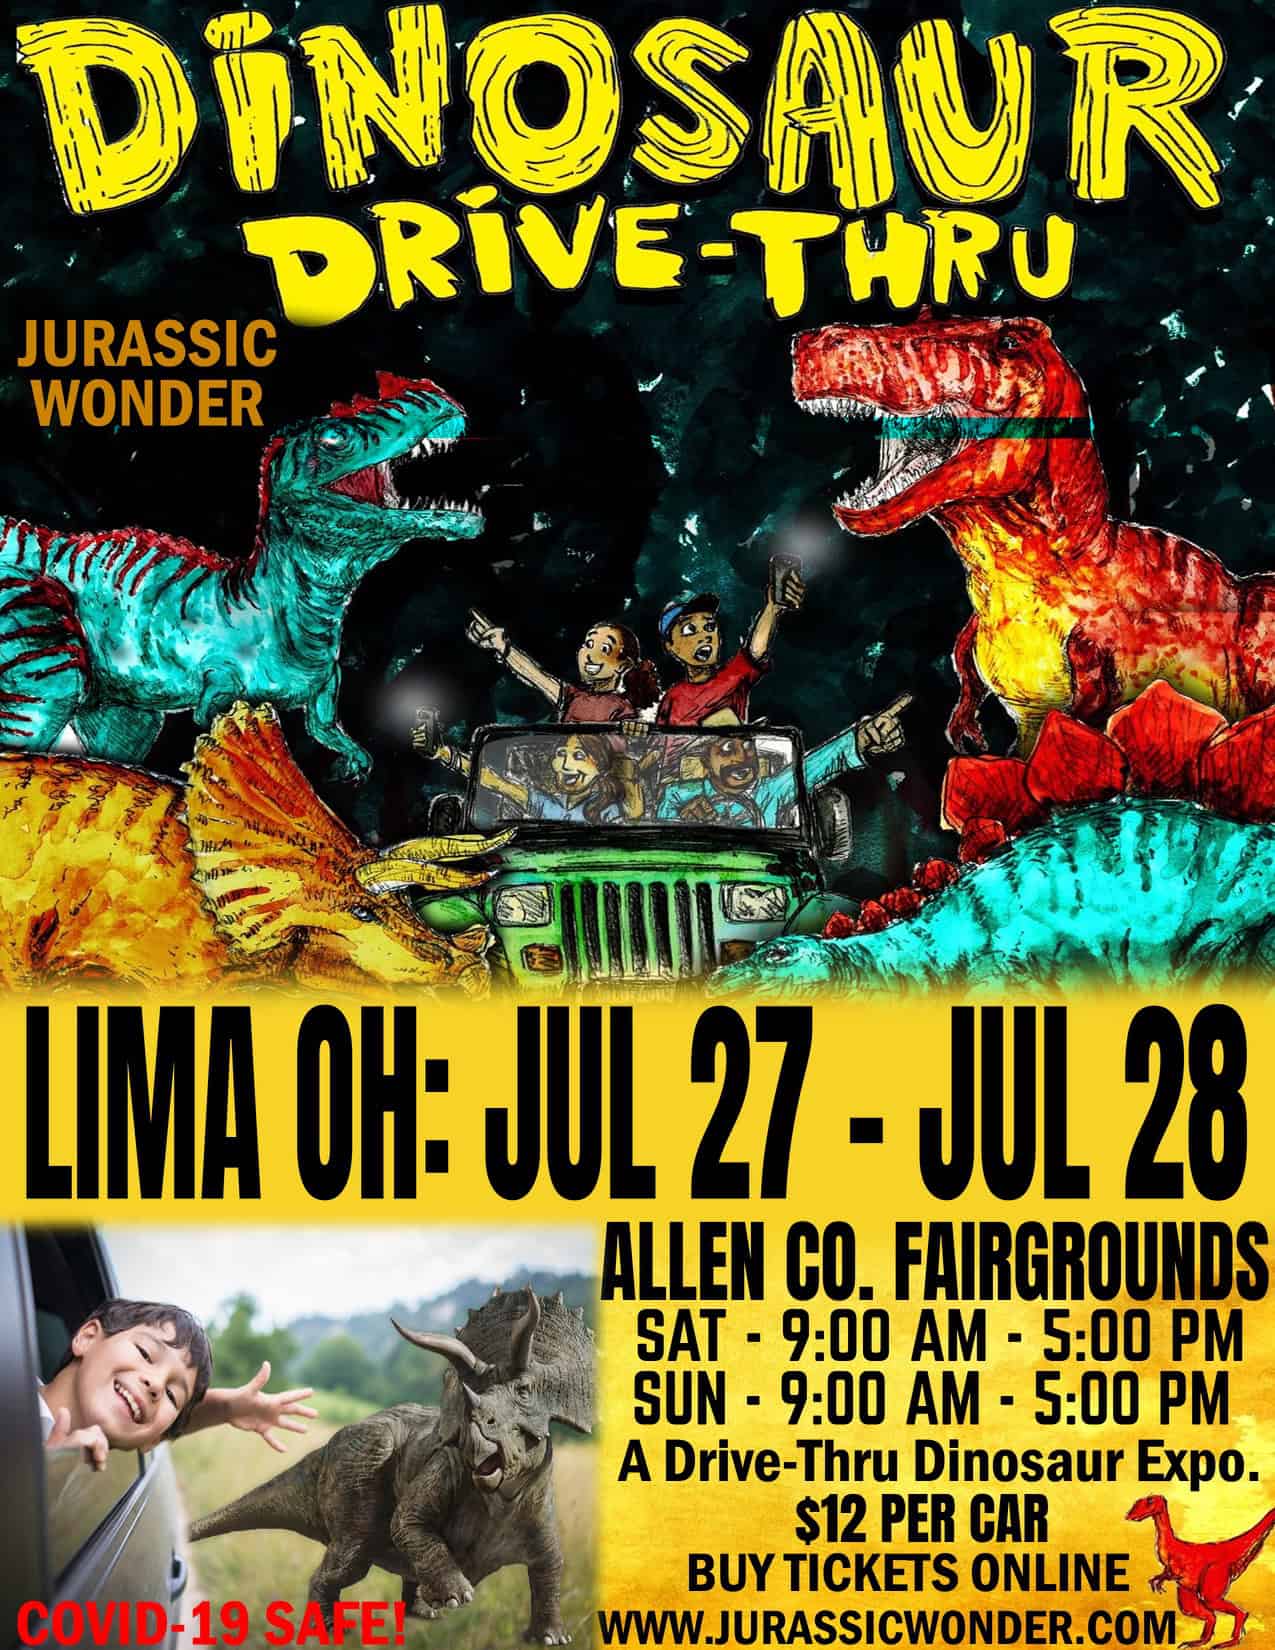 Jurassic Wonder Dinosaur Drive-Thru